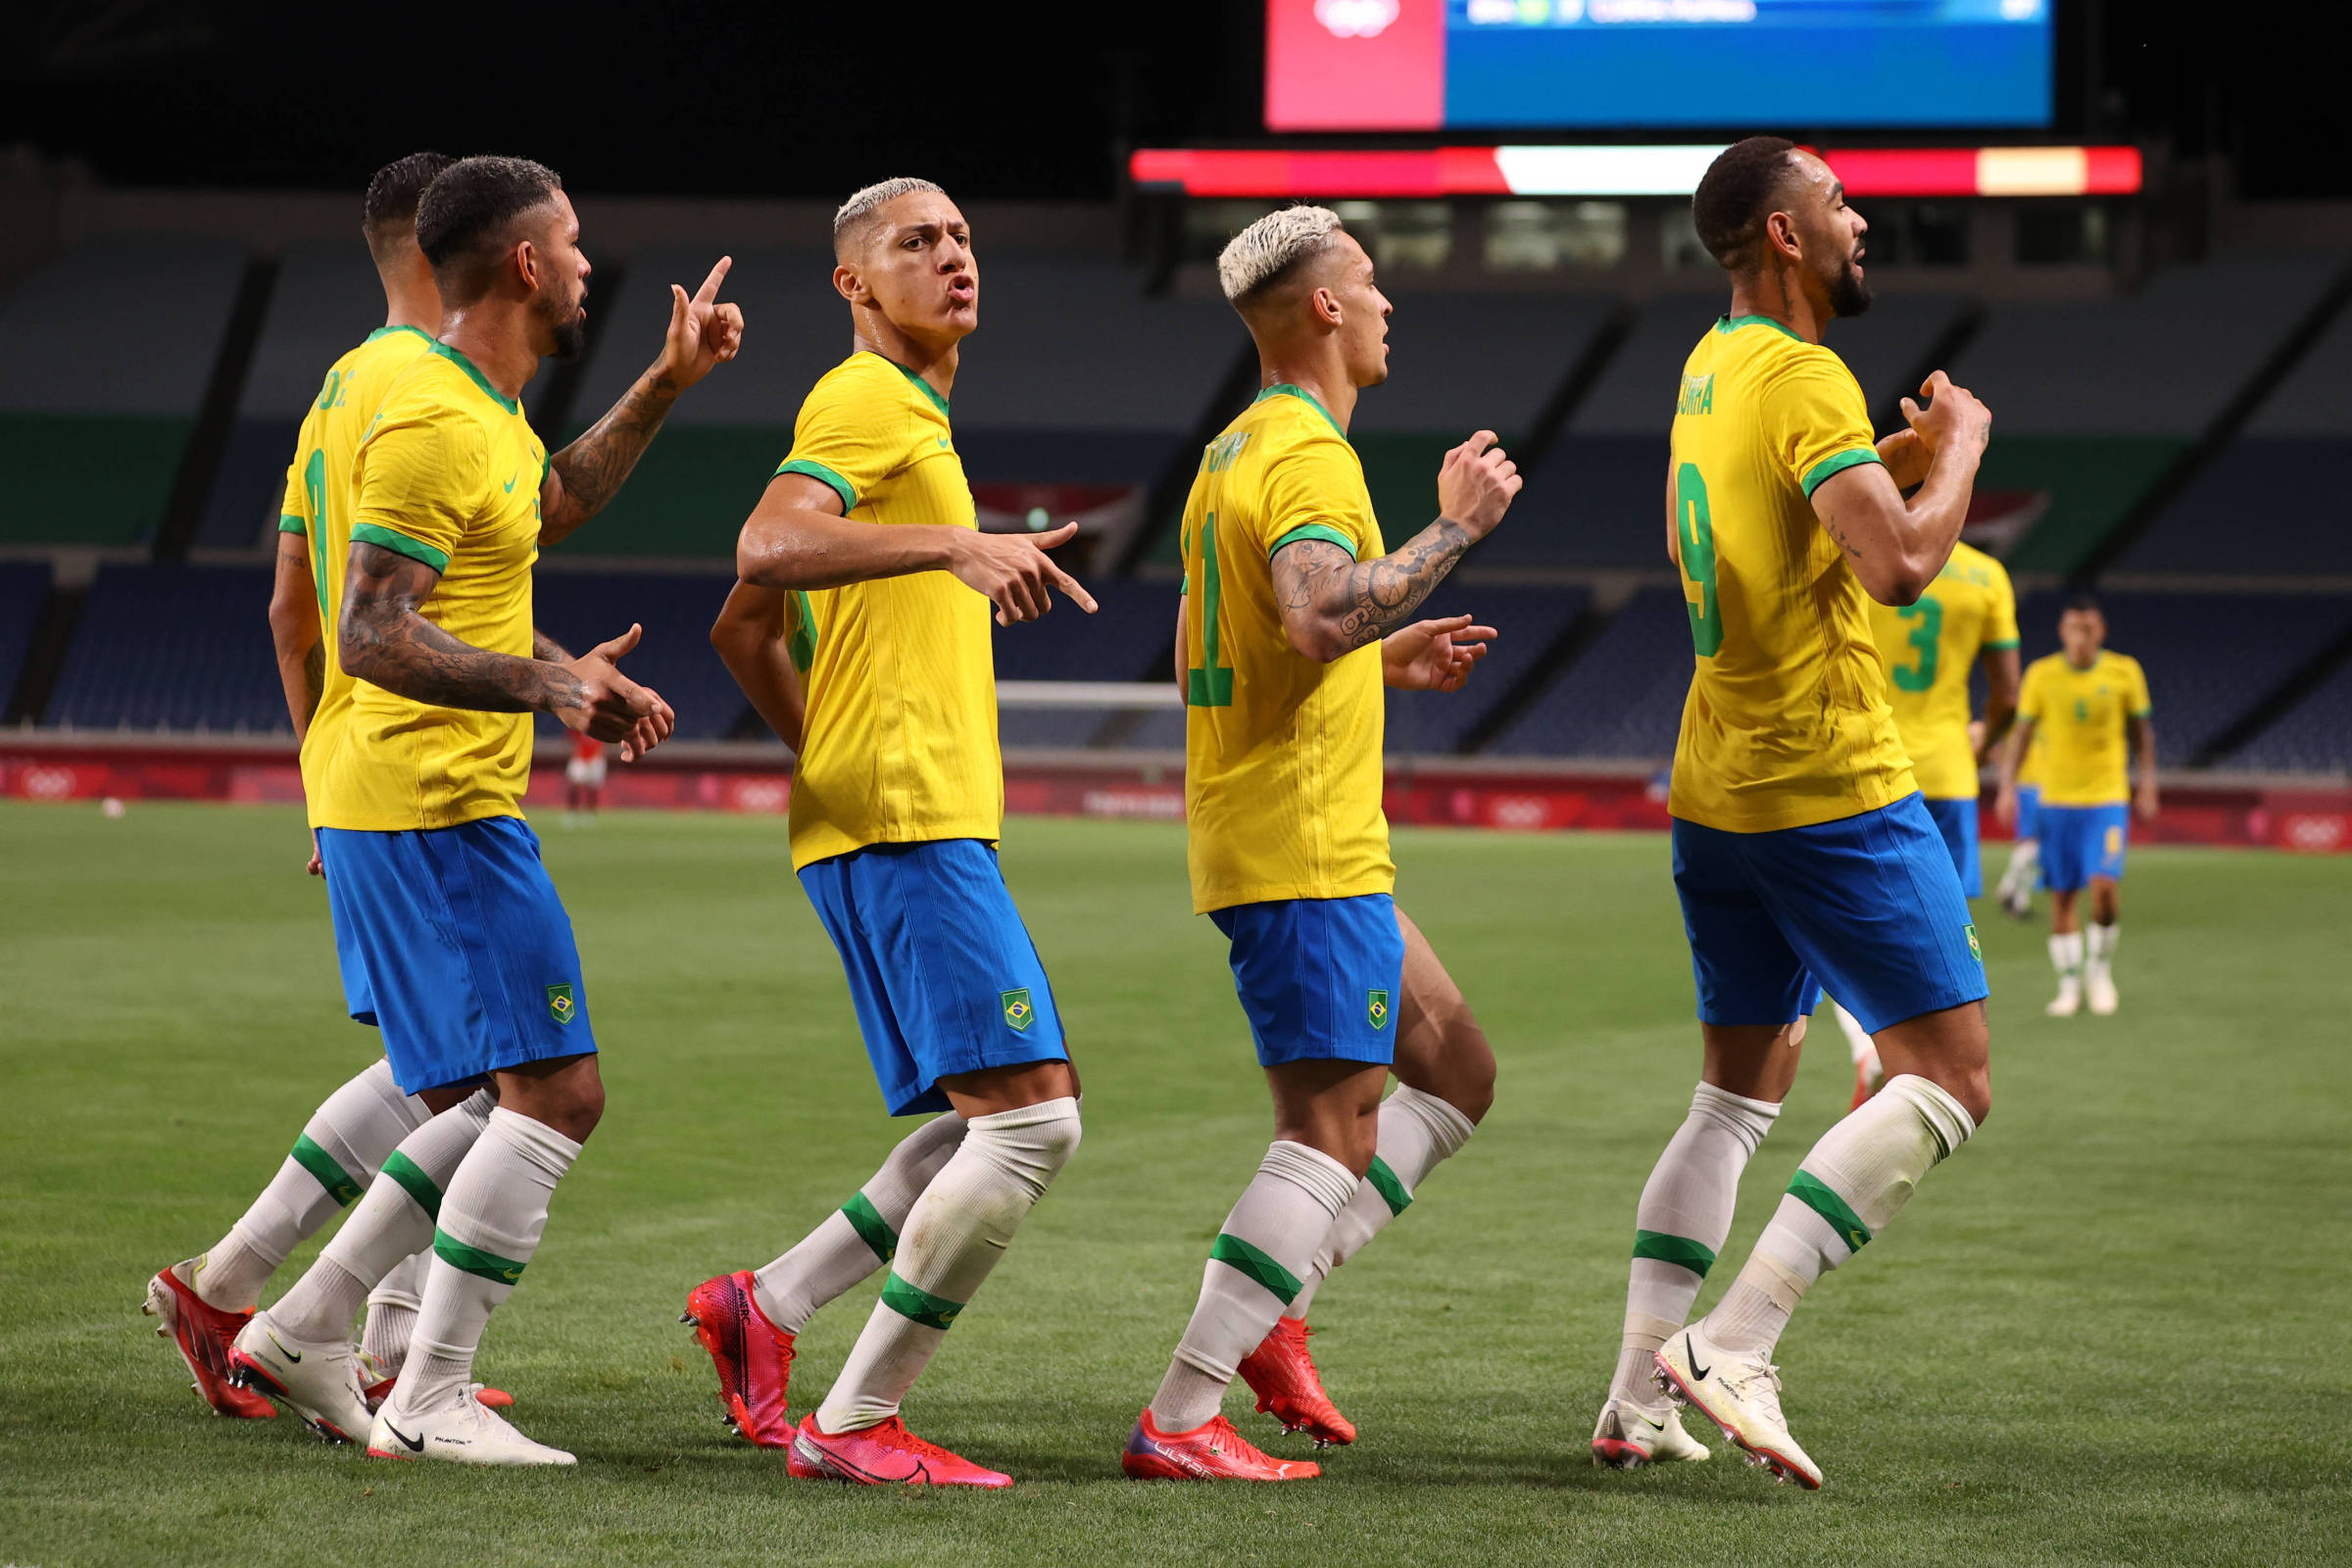 O futebol brasileiro tem que parar - Jornal Opção